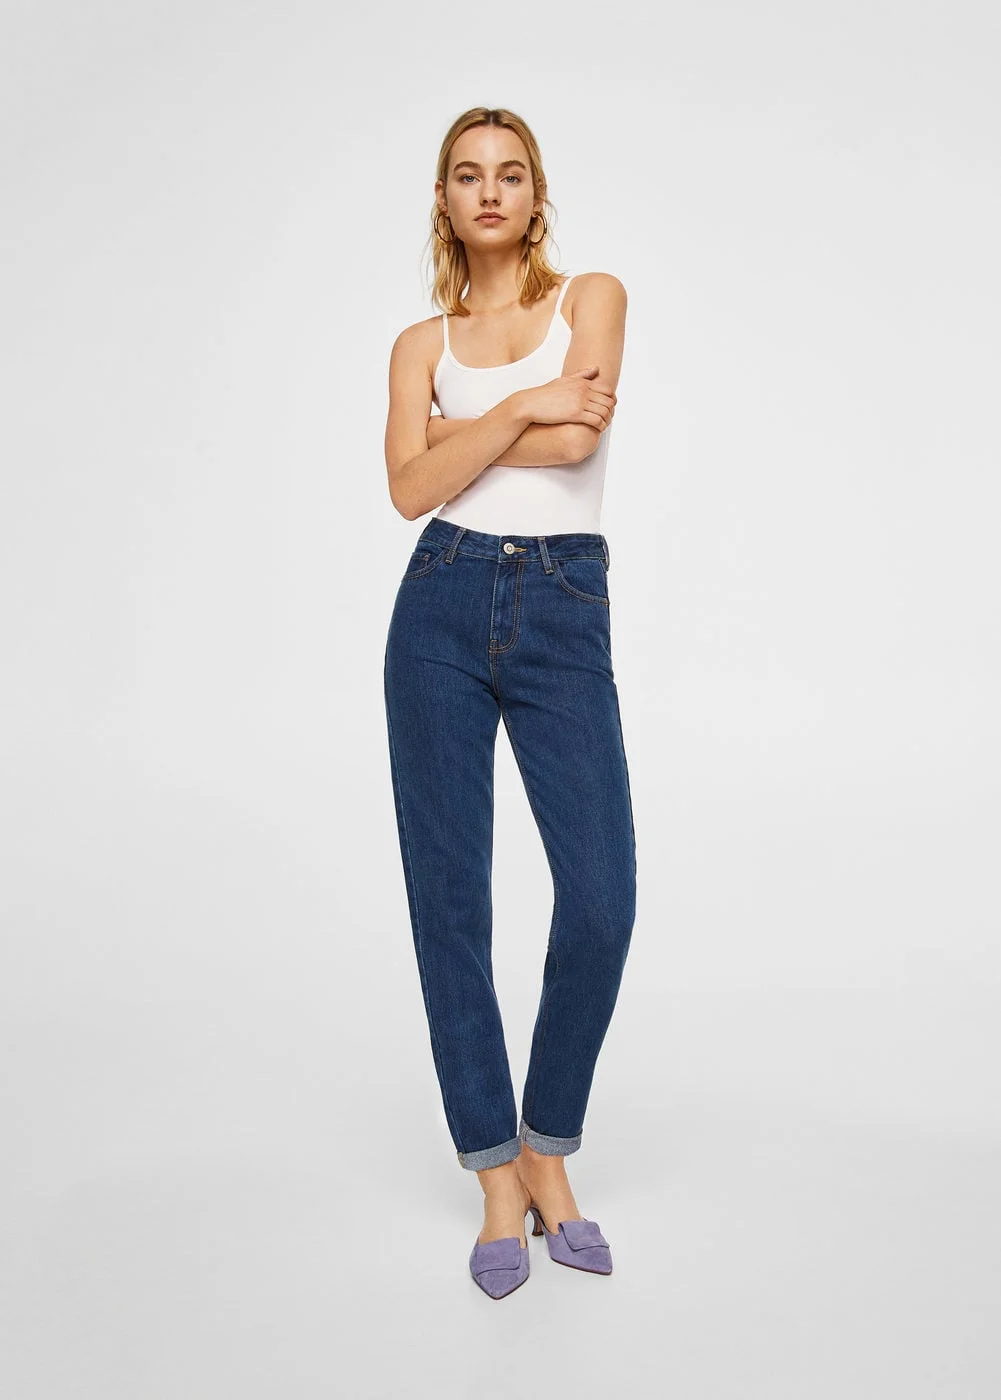 Эти джинсы станут главным хитом сезона и должны быть у каждой девушки - фото 371565